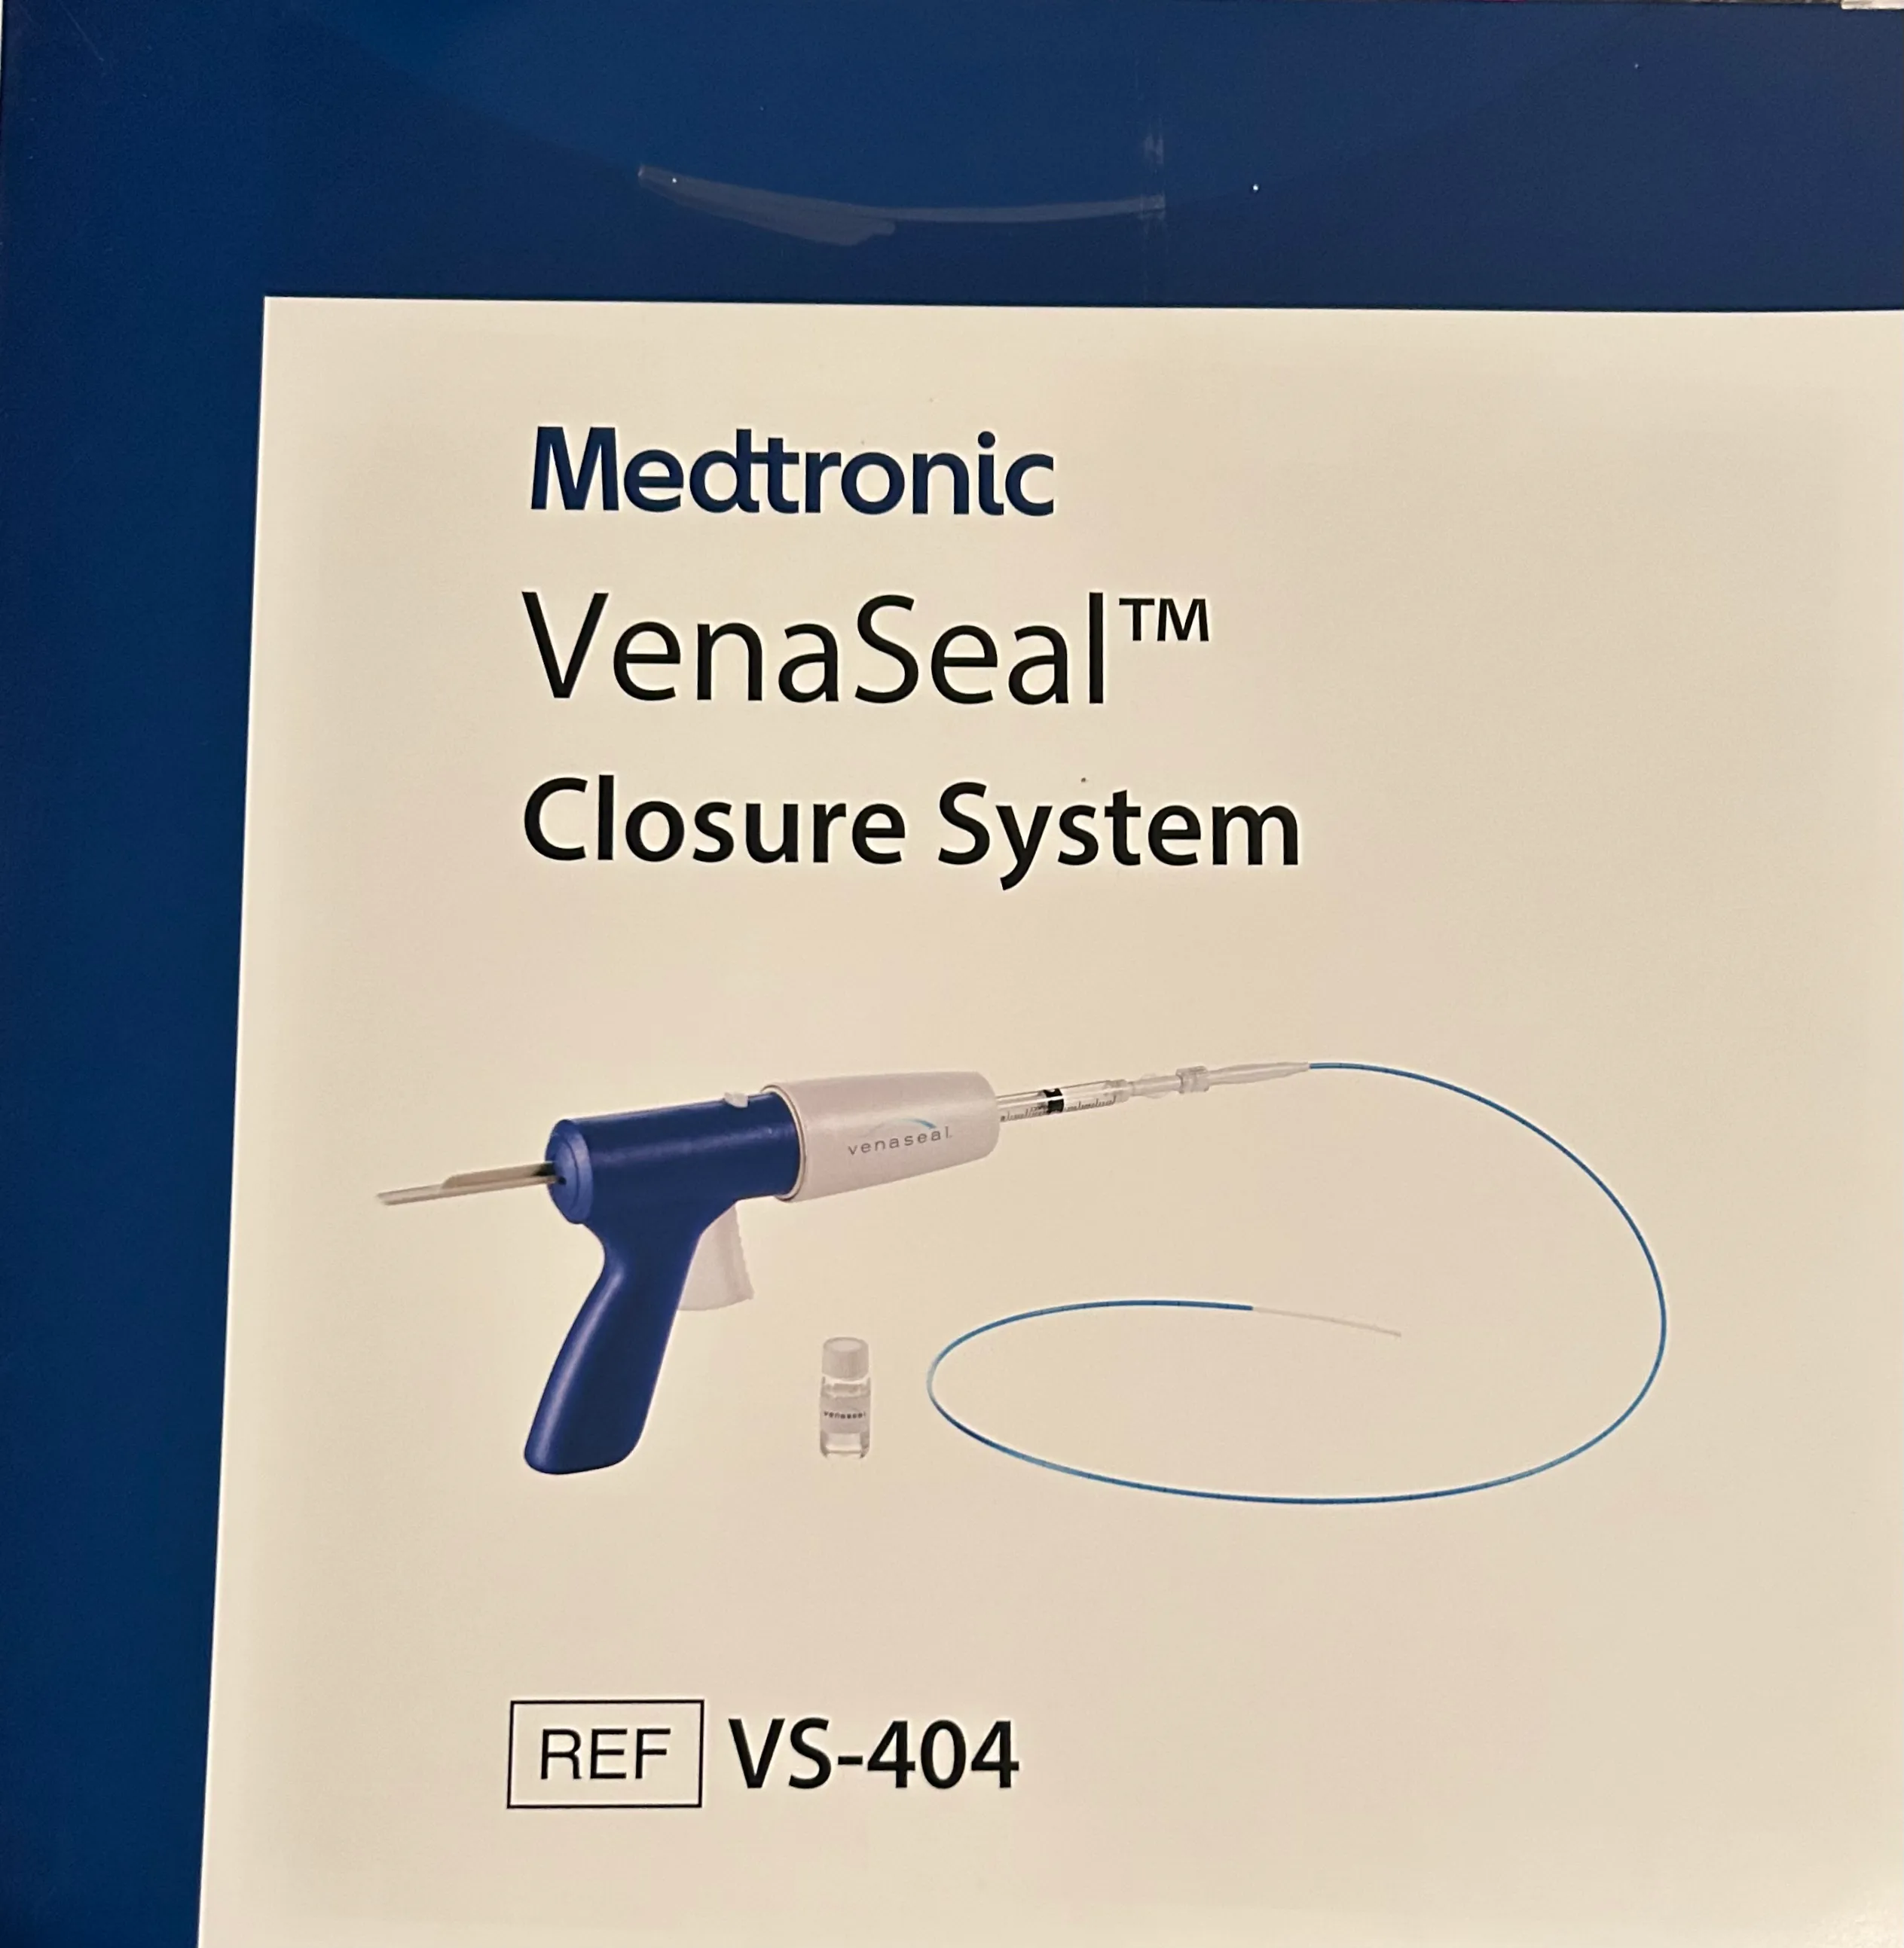 MEDTRONIC VENASEAL CLOSURE SYSTEM KIT - VS-404 